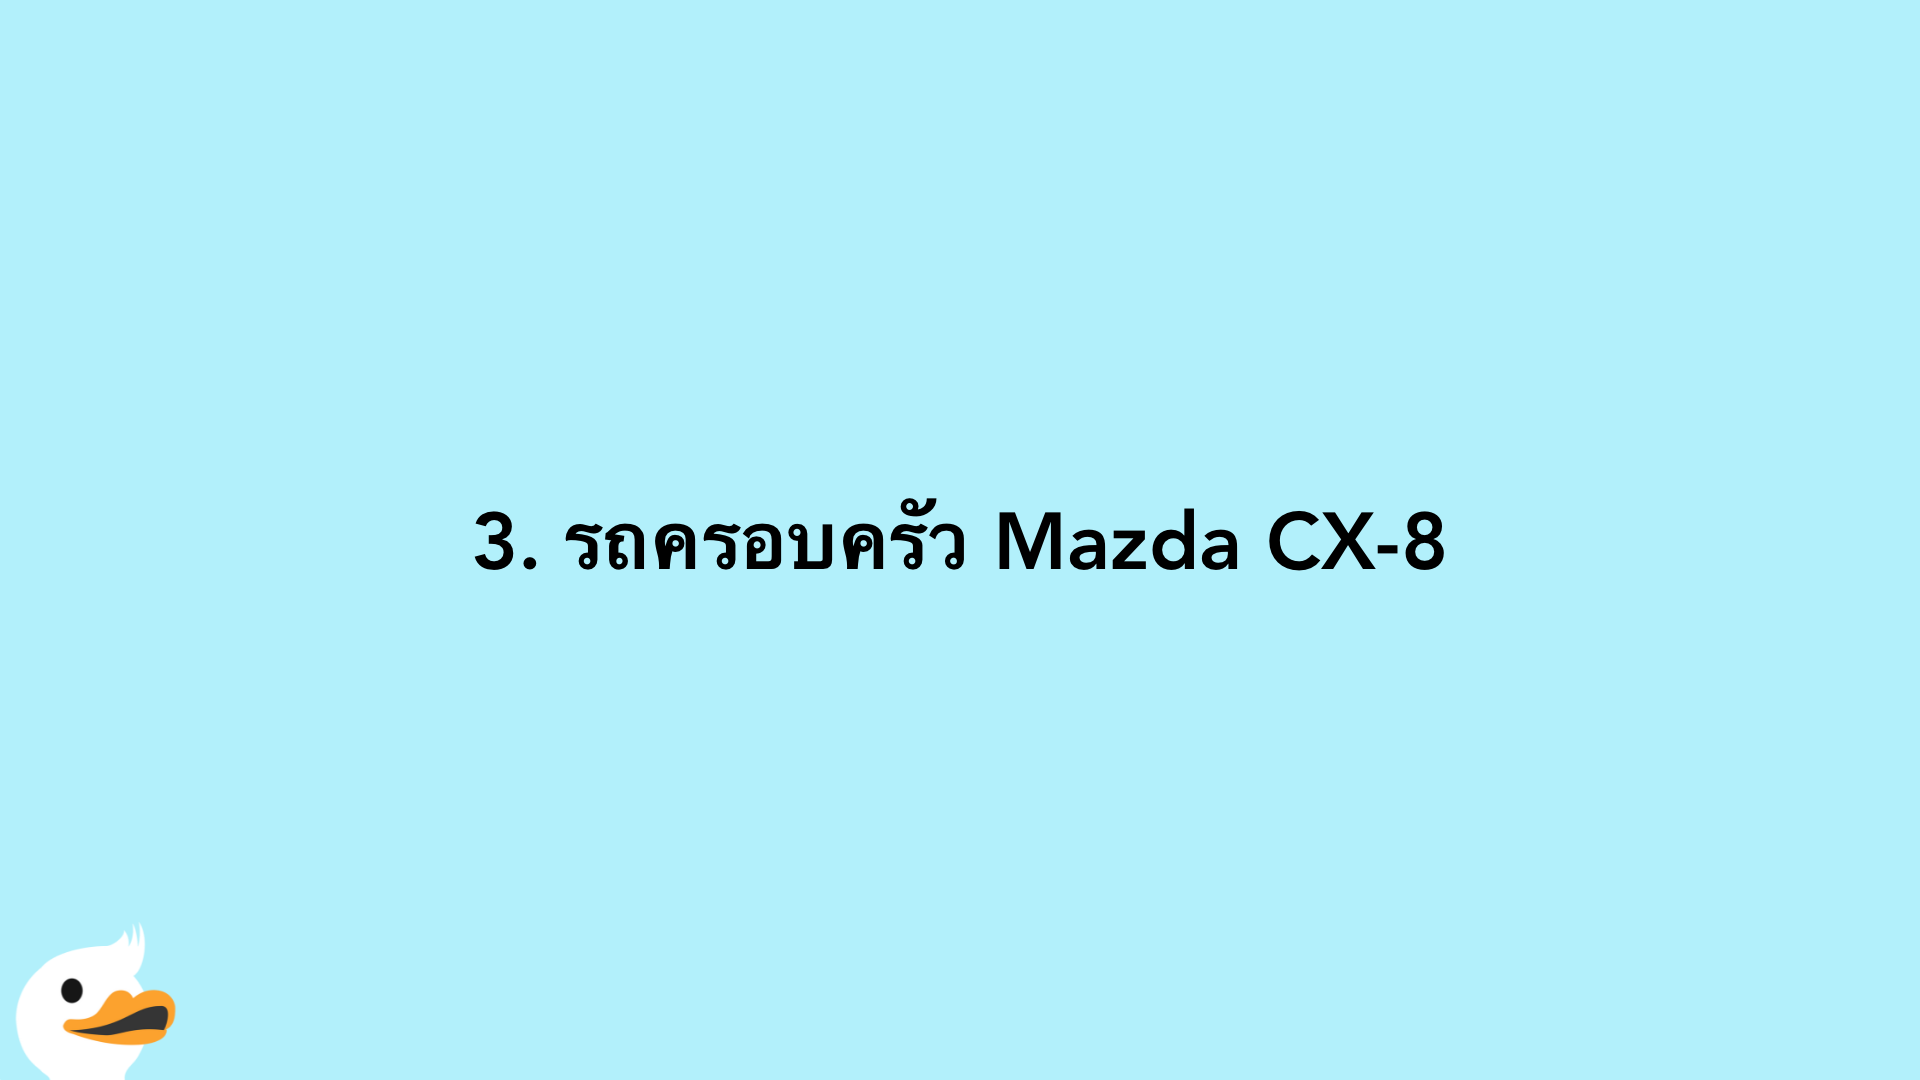 3. รถครอบครัว Mazda CX-8